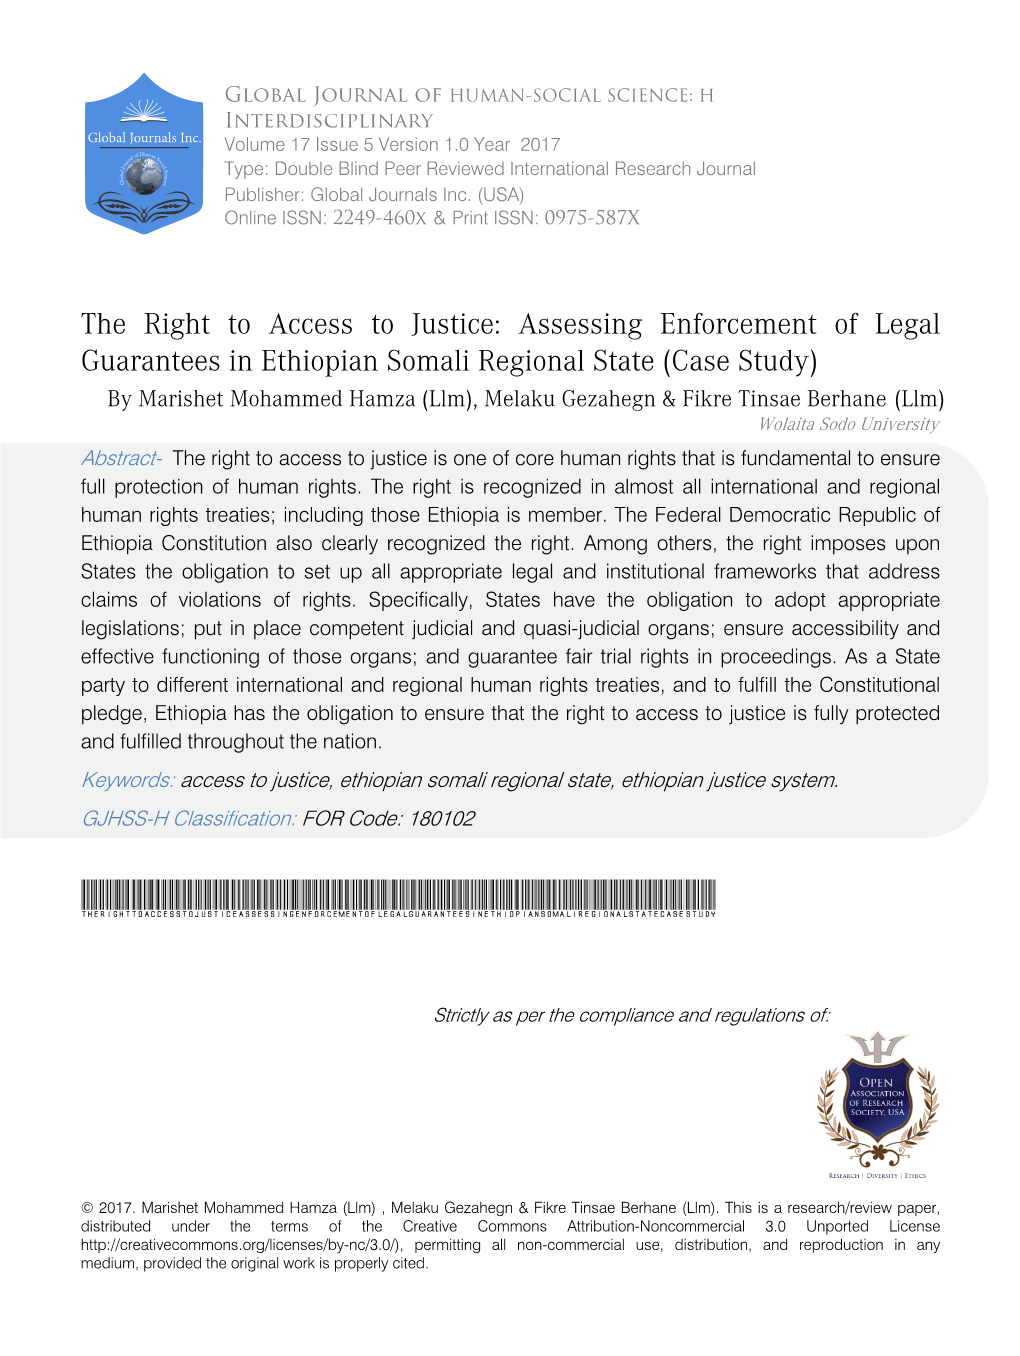 Assessing Enforcement of Legal Guarantees in Ethiopian Somali